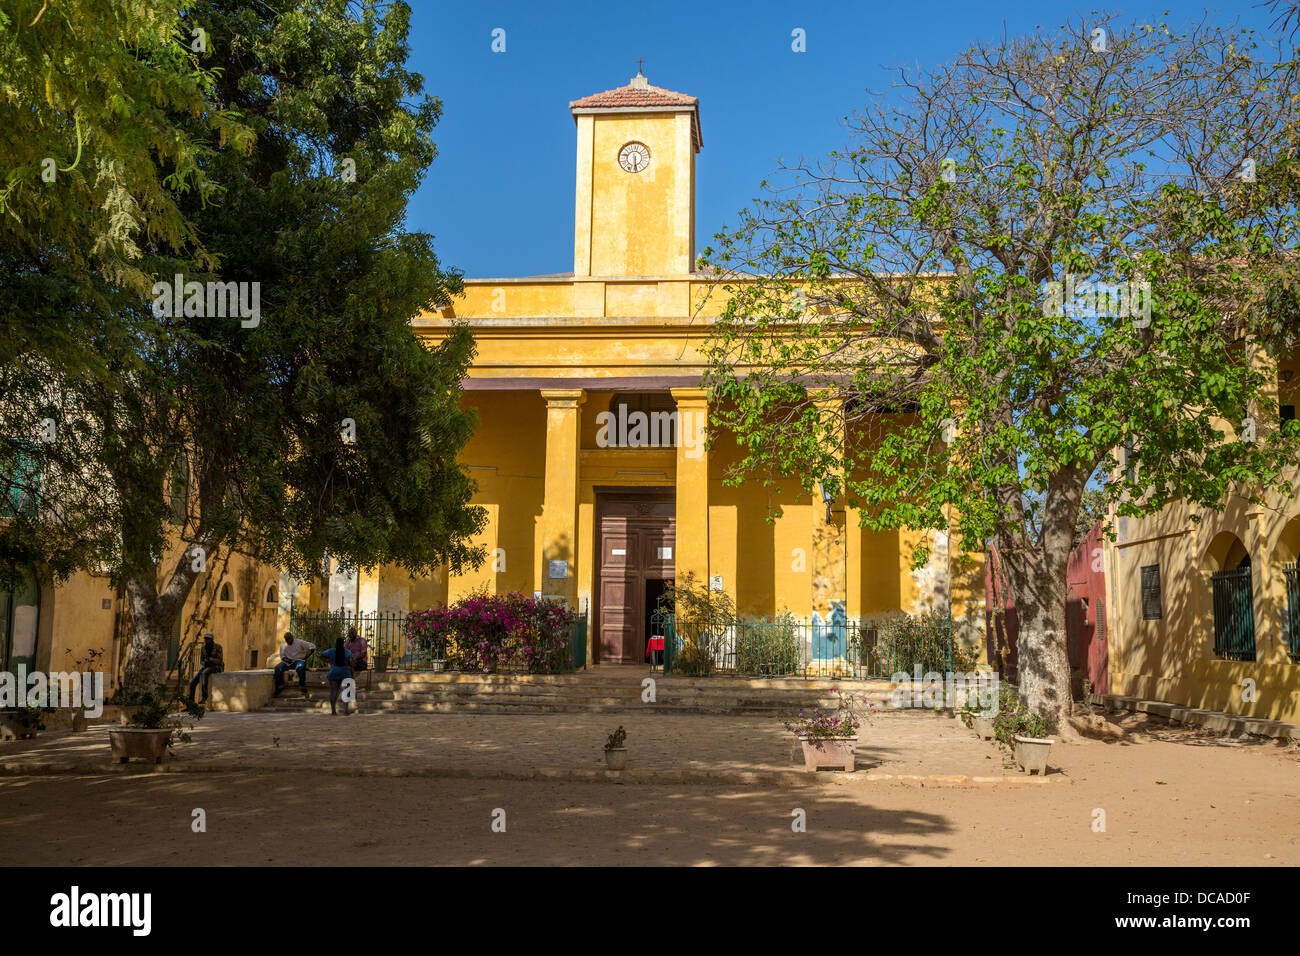 St Charles Boromeo Église catholique, l'île de Gorée, au Sénégal. Banque D'Images